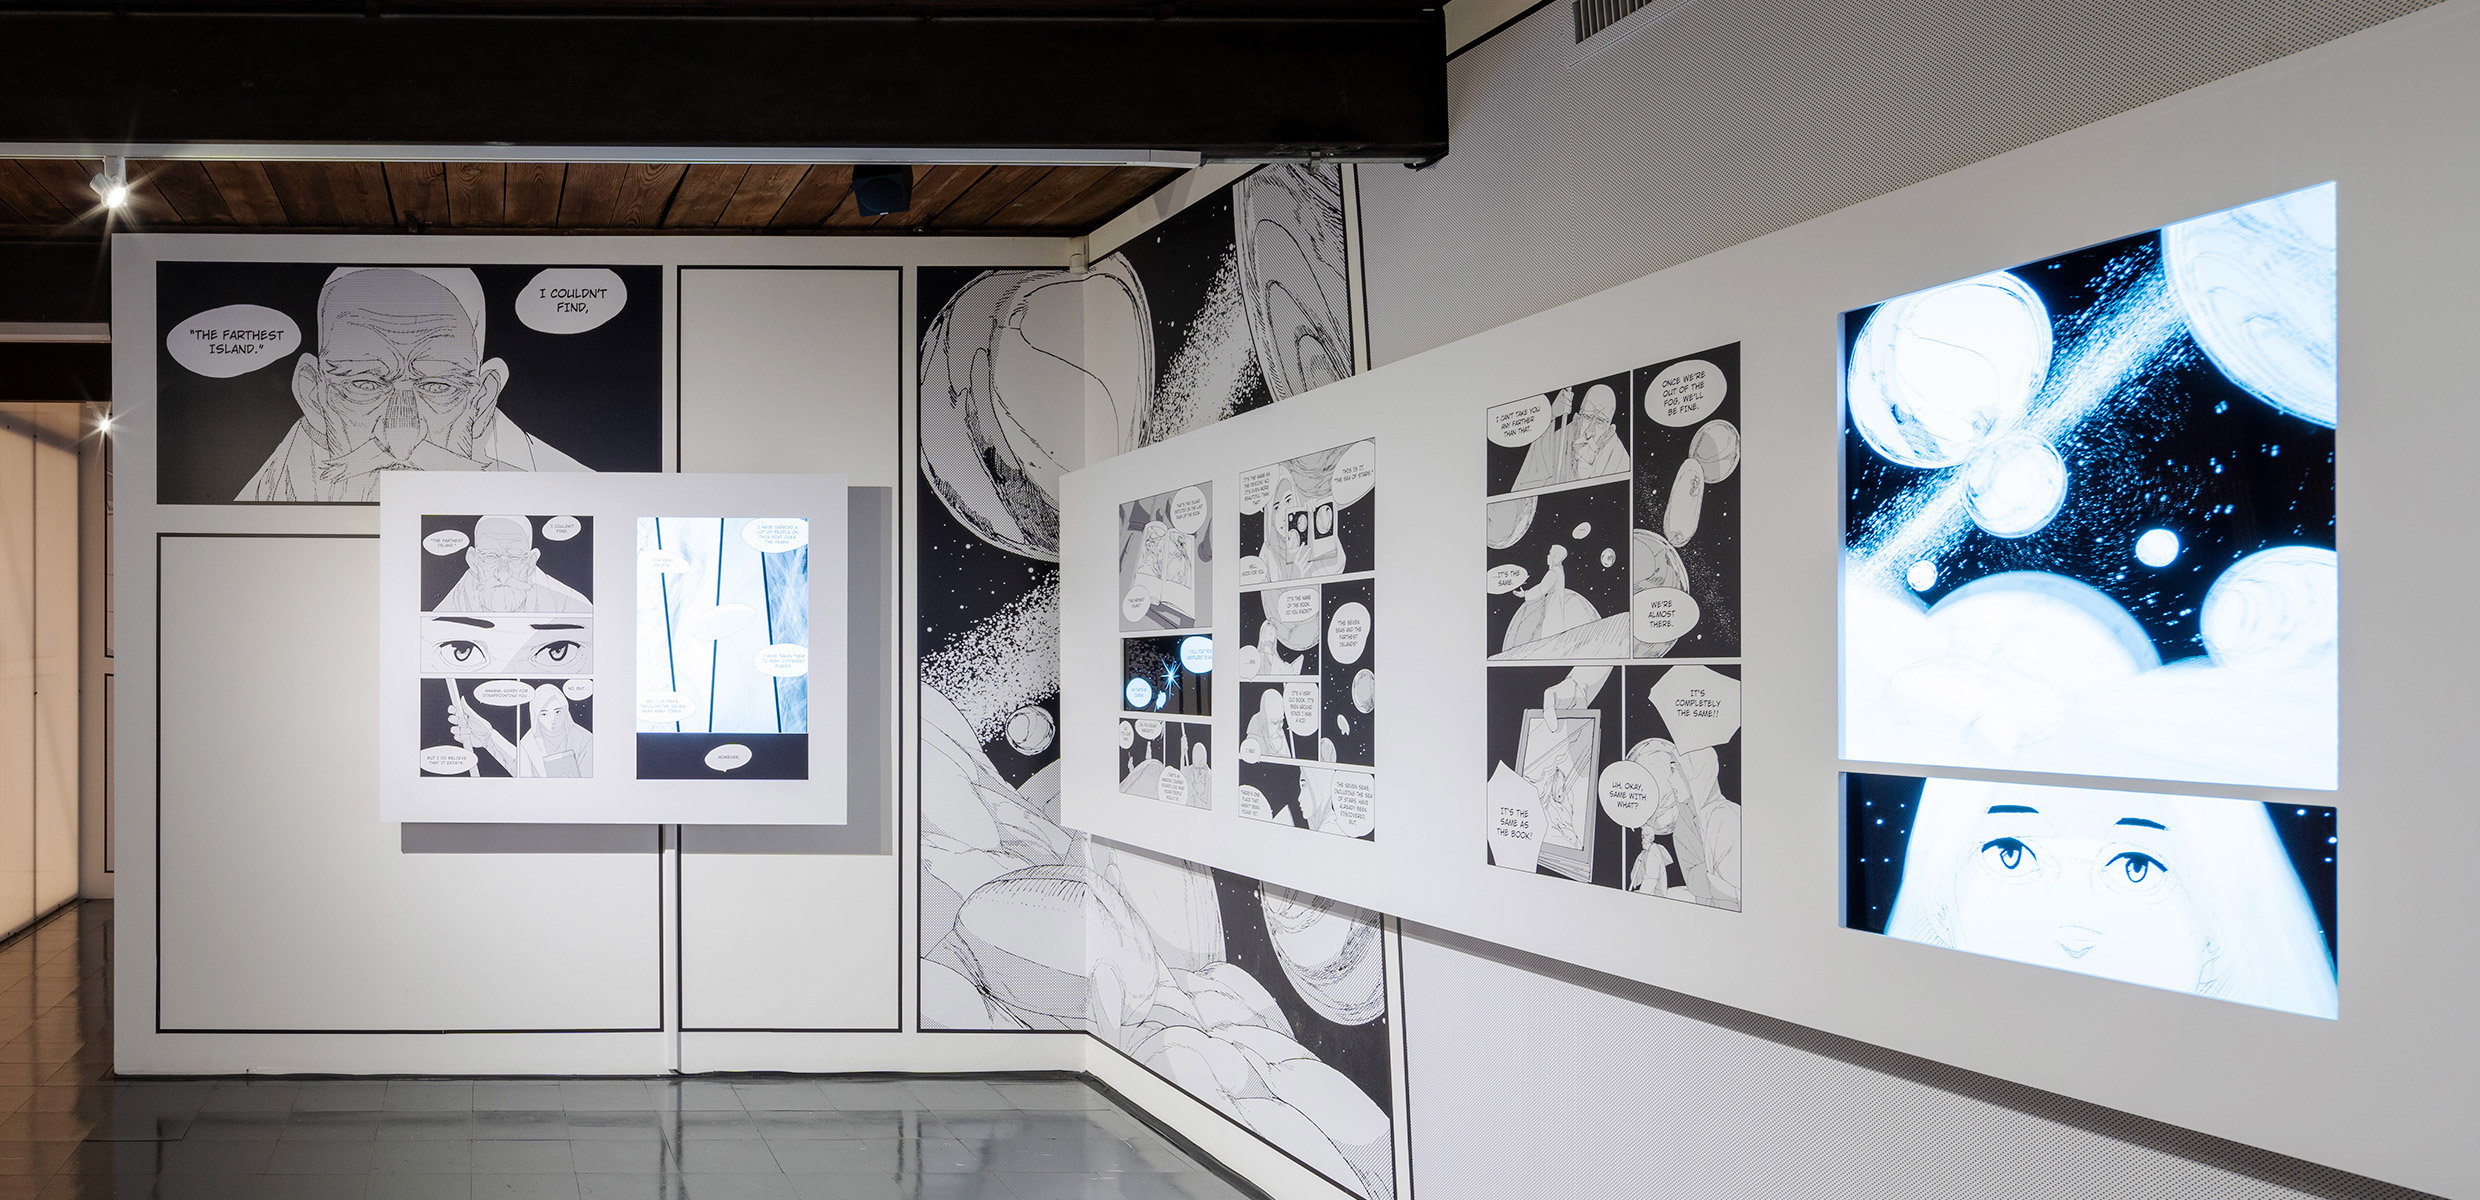 エキシビション会場内、平岡政展によるマンガ『案内人』の展示ゾーン。壁面には作品のグラフィックが大きく掲出され、その上にマンガが１ページずつ展示されている。ところどころマンガのコマにモニターが埋め込まれ、映像が映し出されている。